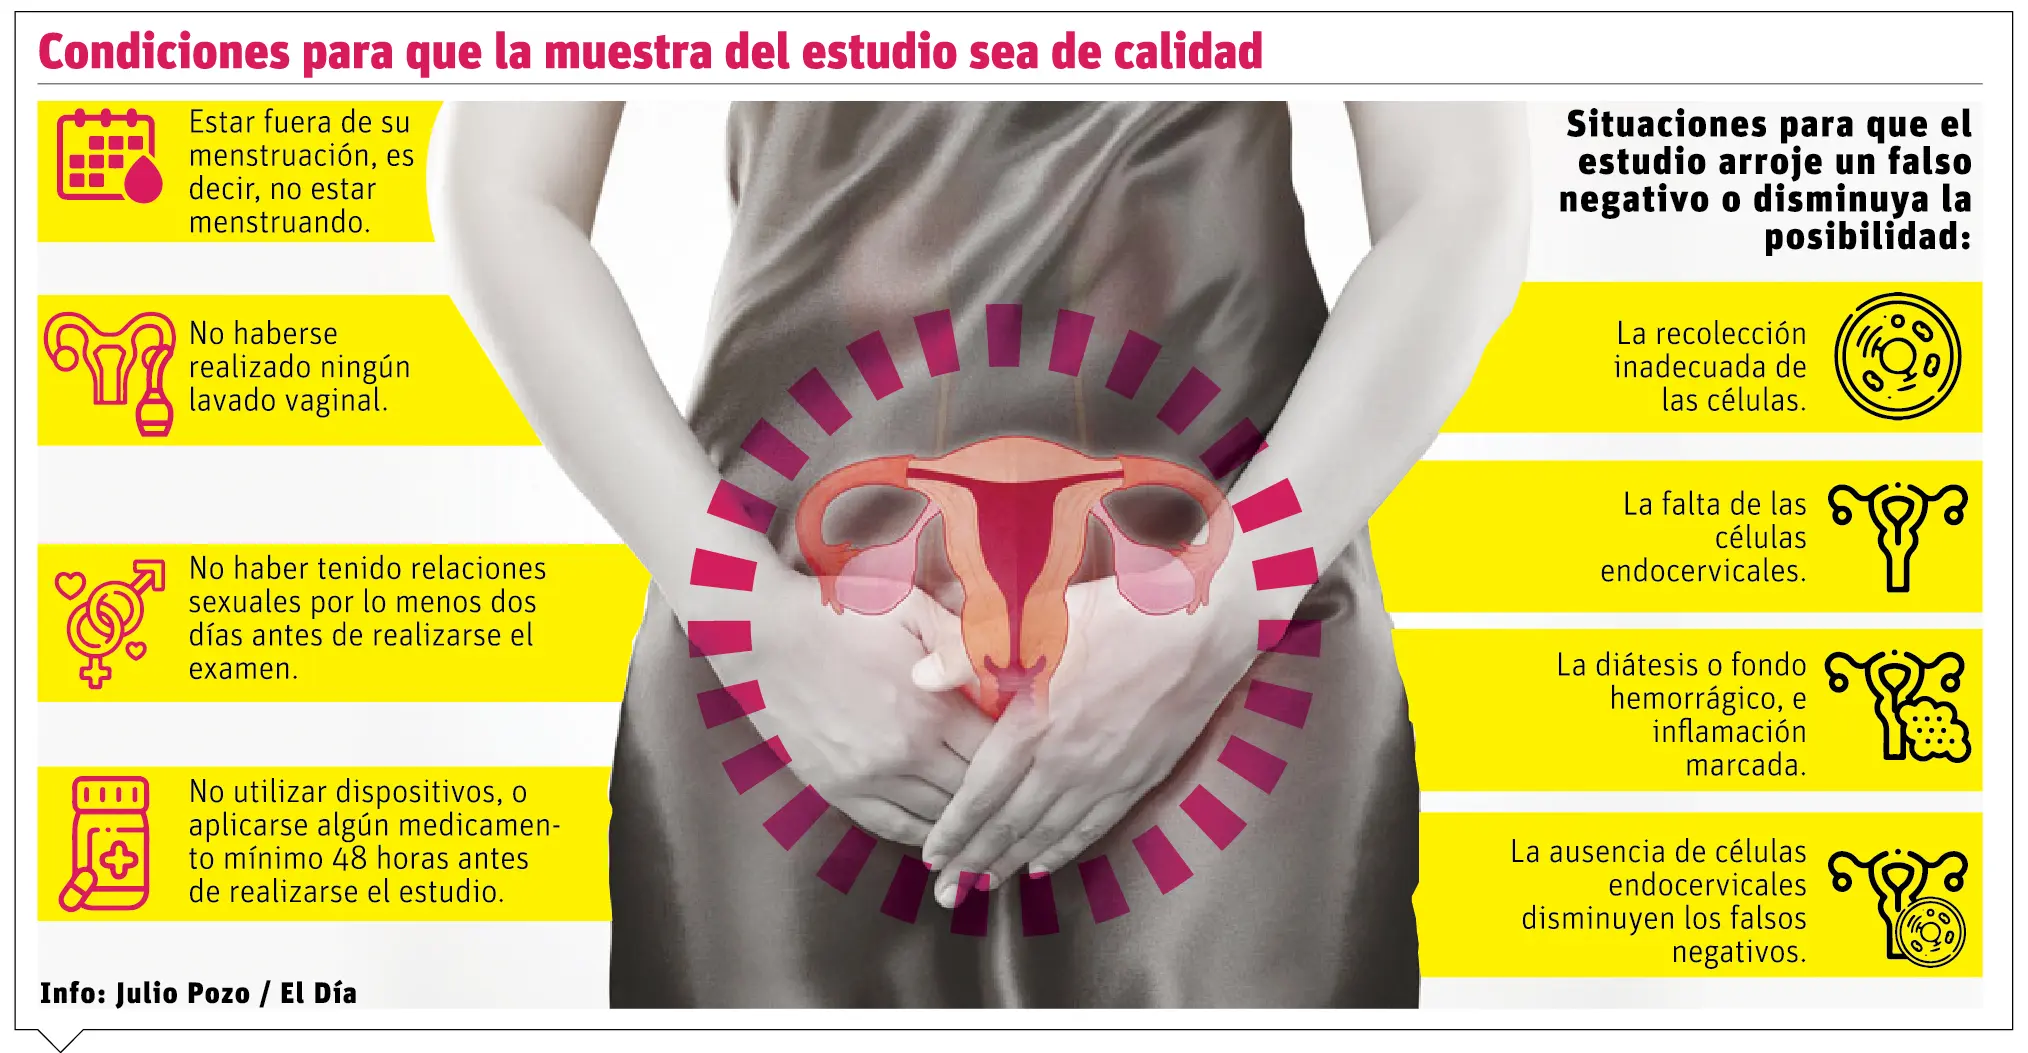 El Papanicolaou, importante en la detección temprana del cáncer cérvico uterino